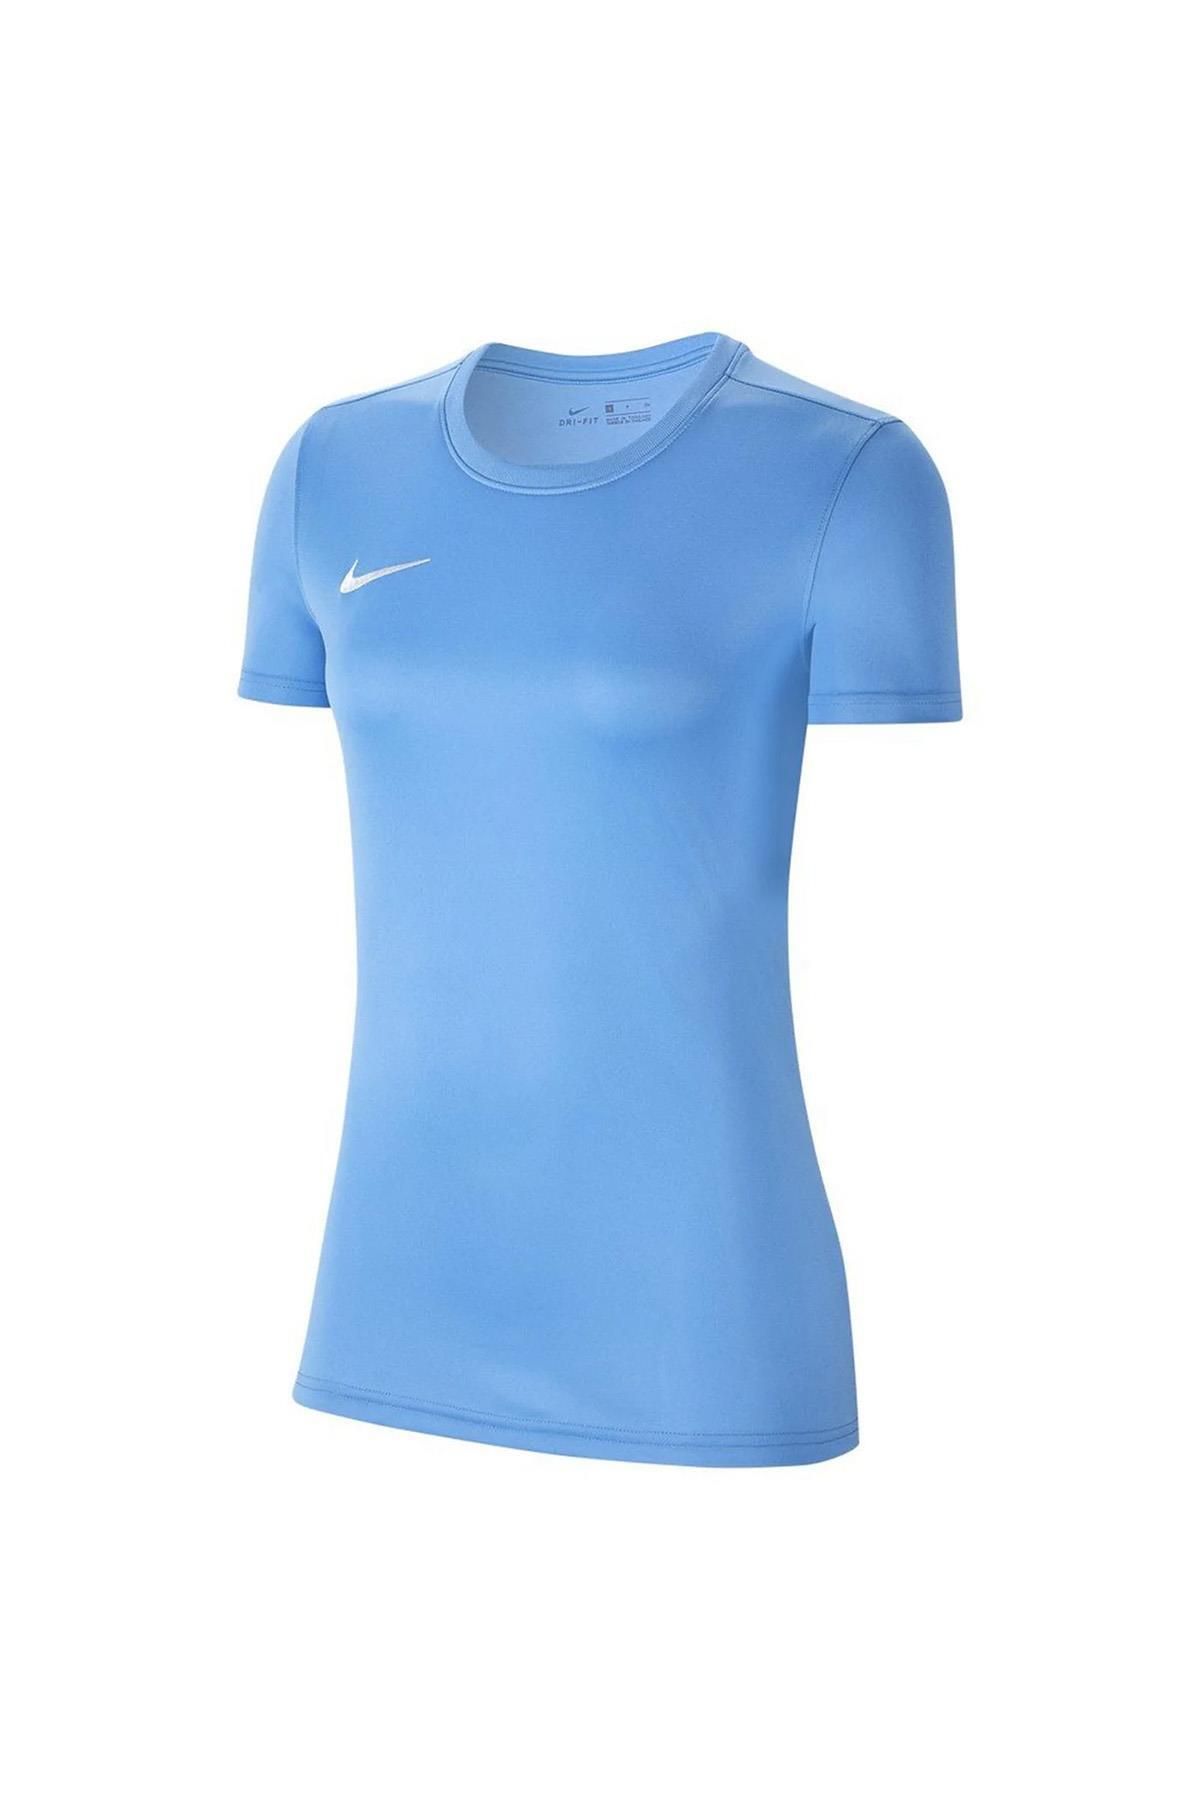 Nike Dri Fit Park 7 Bv6728-412 Mavi Kadın Tişört